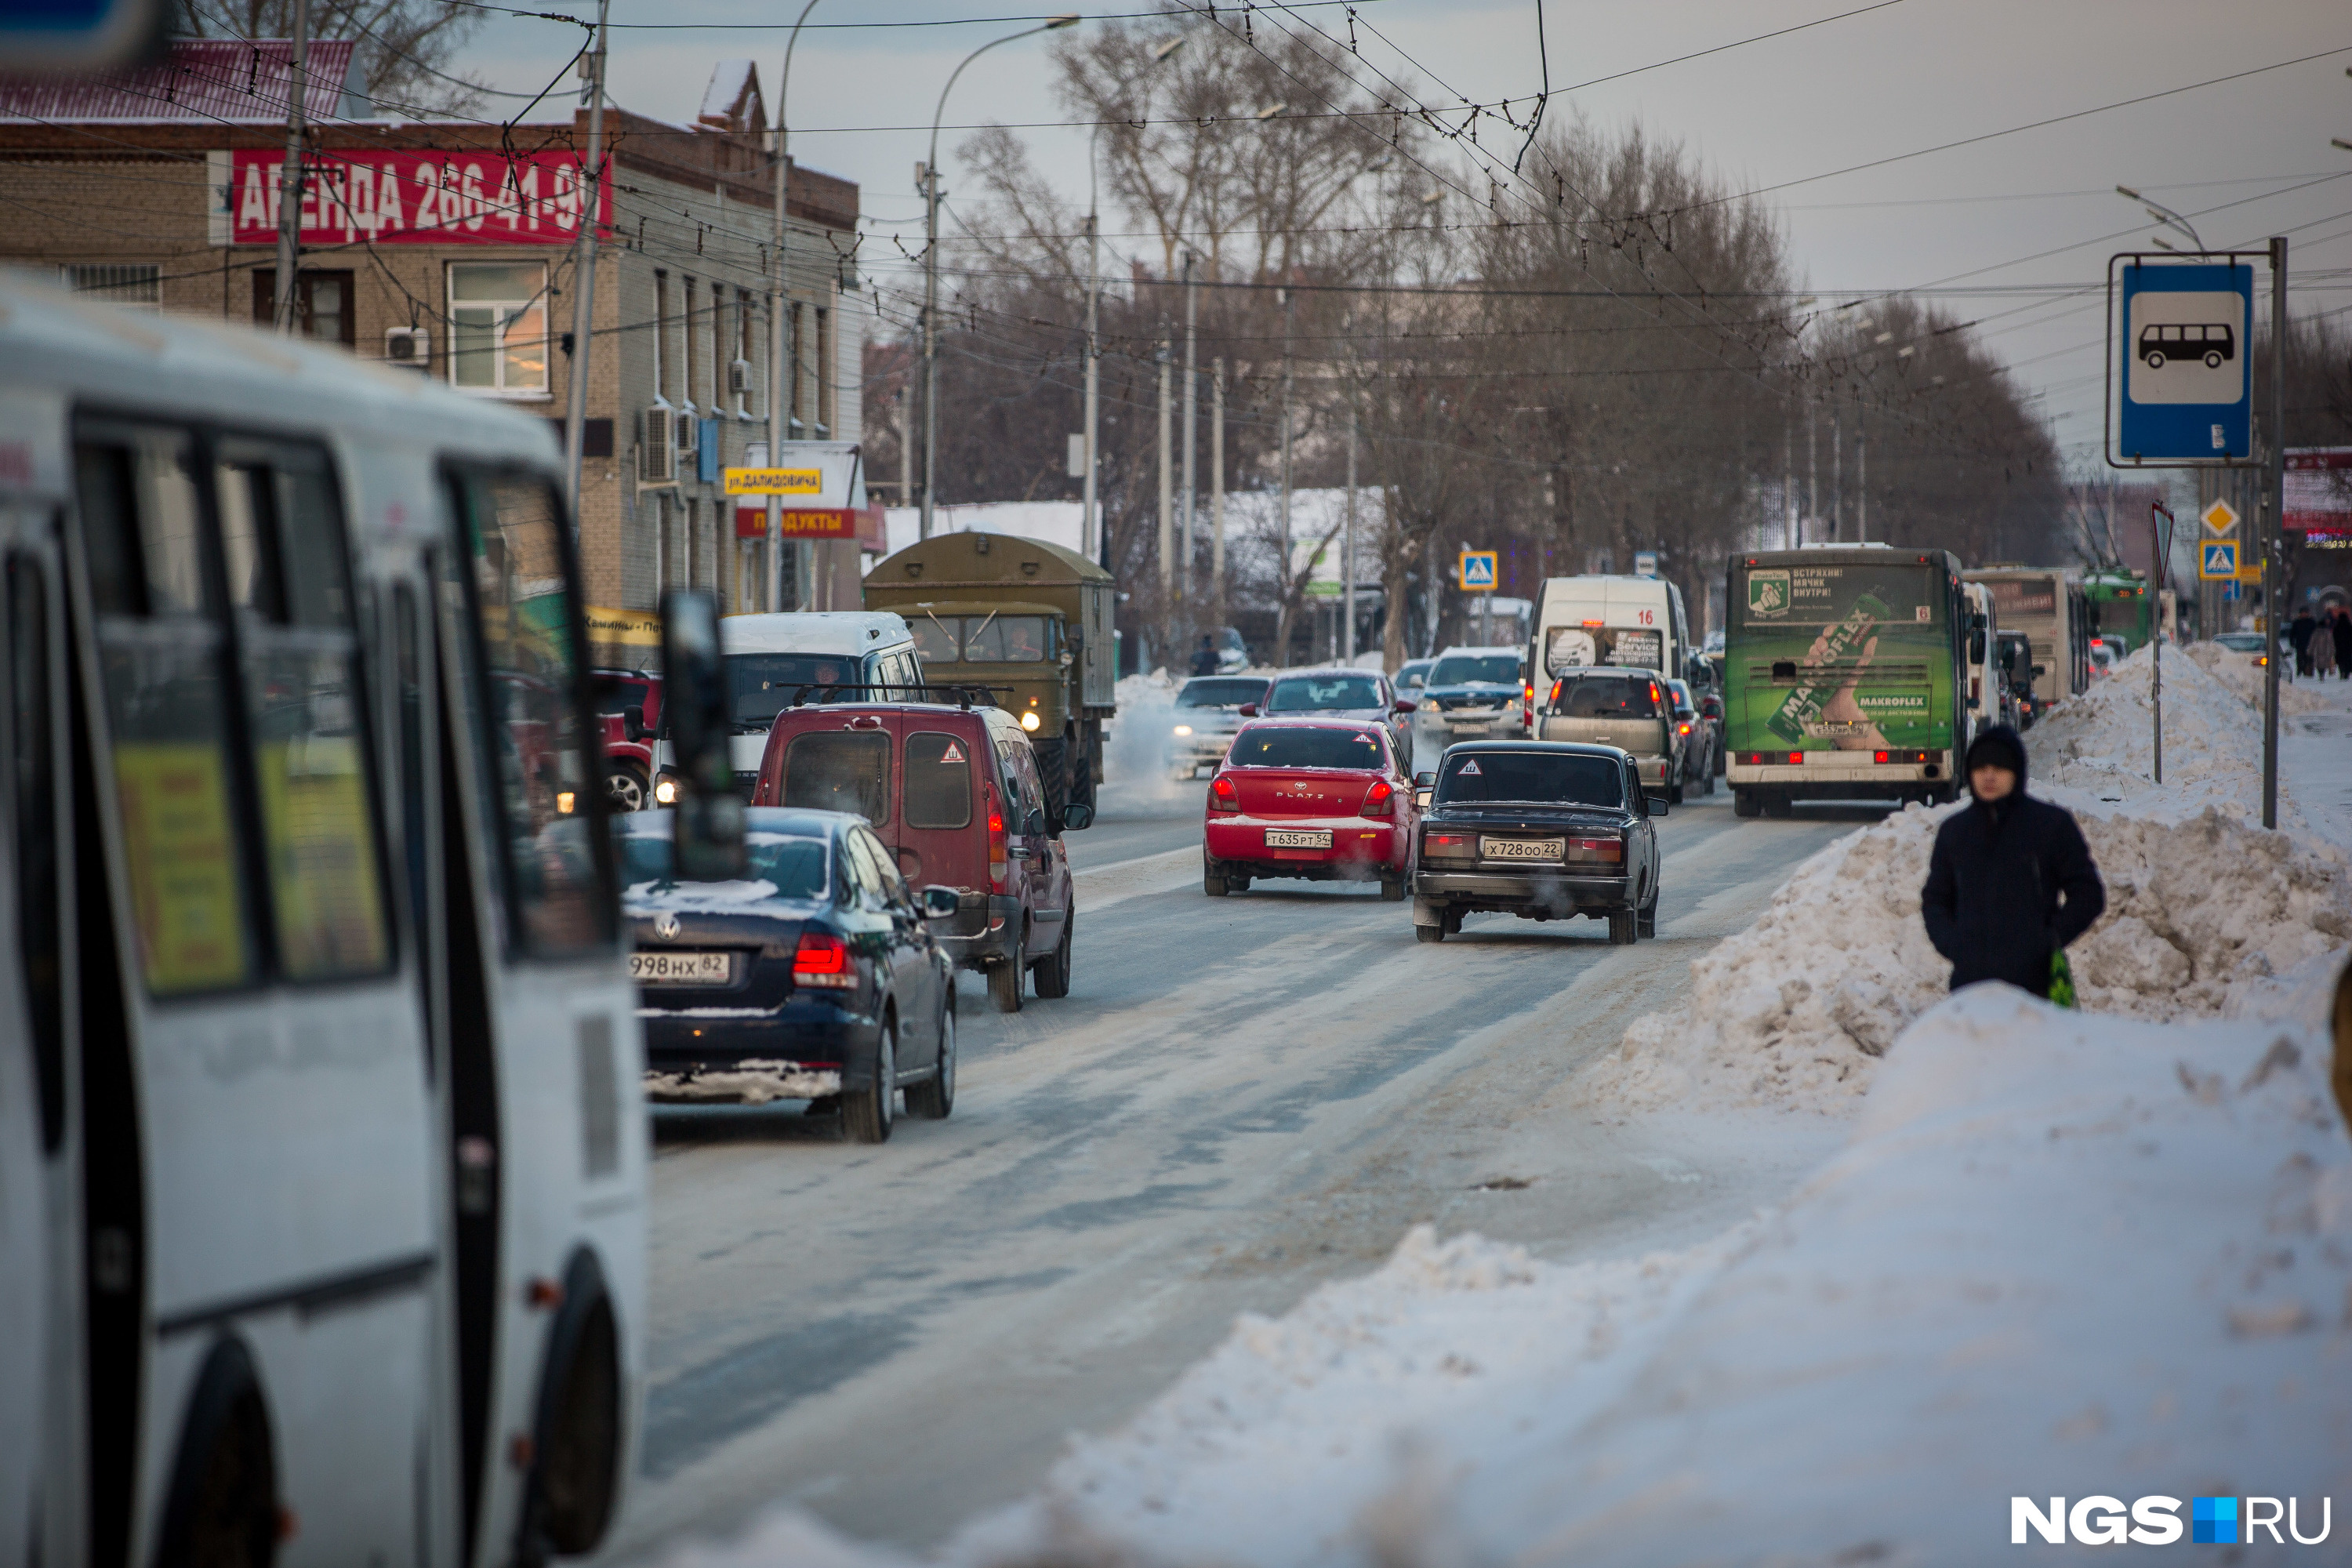 Перевозчики заявляют, что тариф на все виды городского транспорта в Новосибирске не может быть ниже 30 рублей